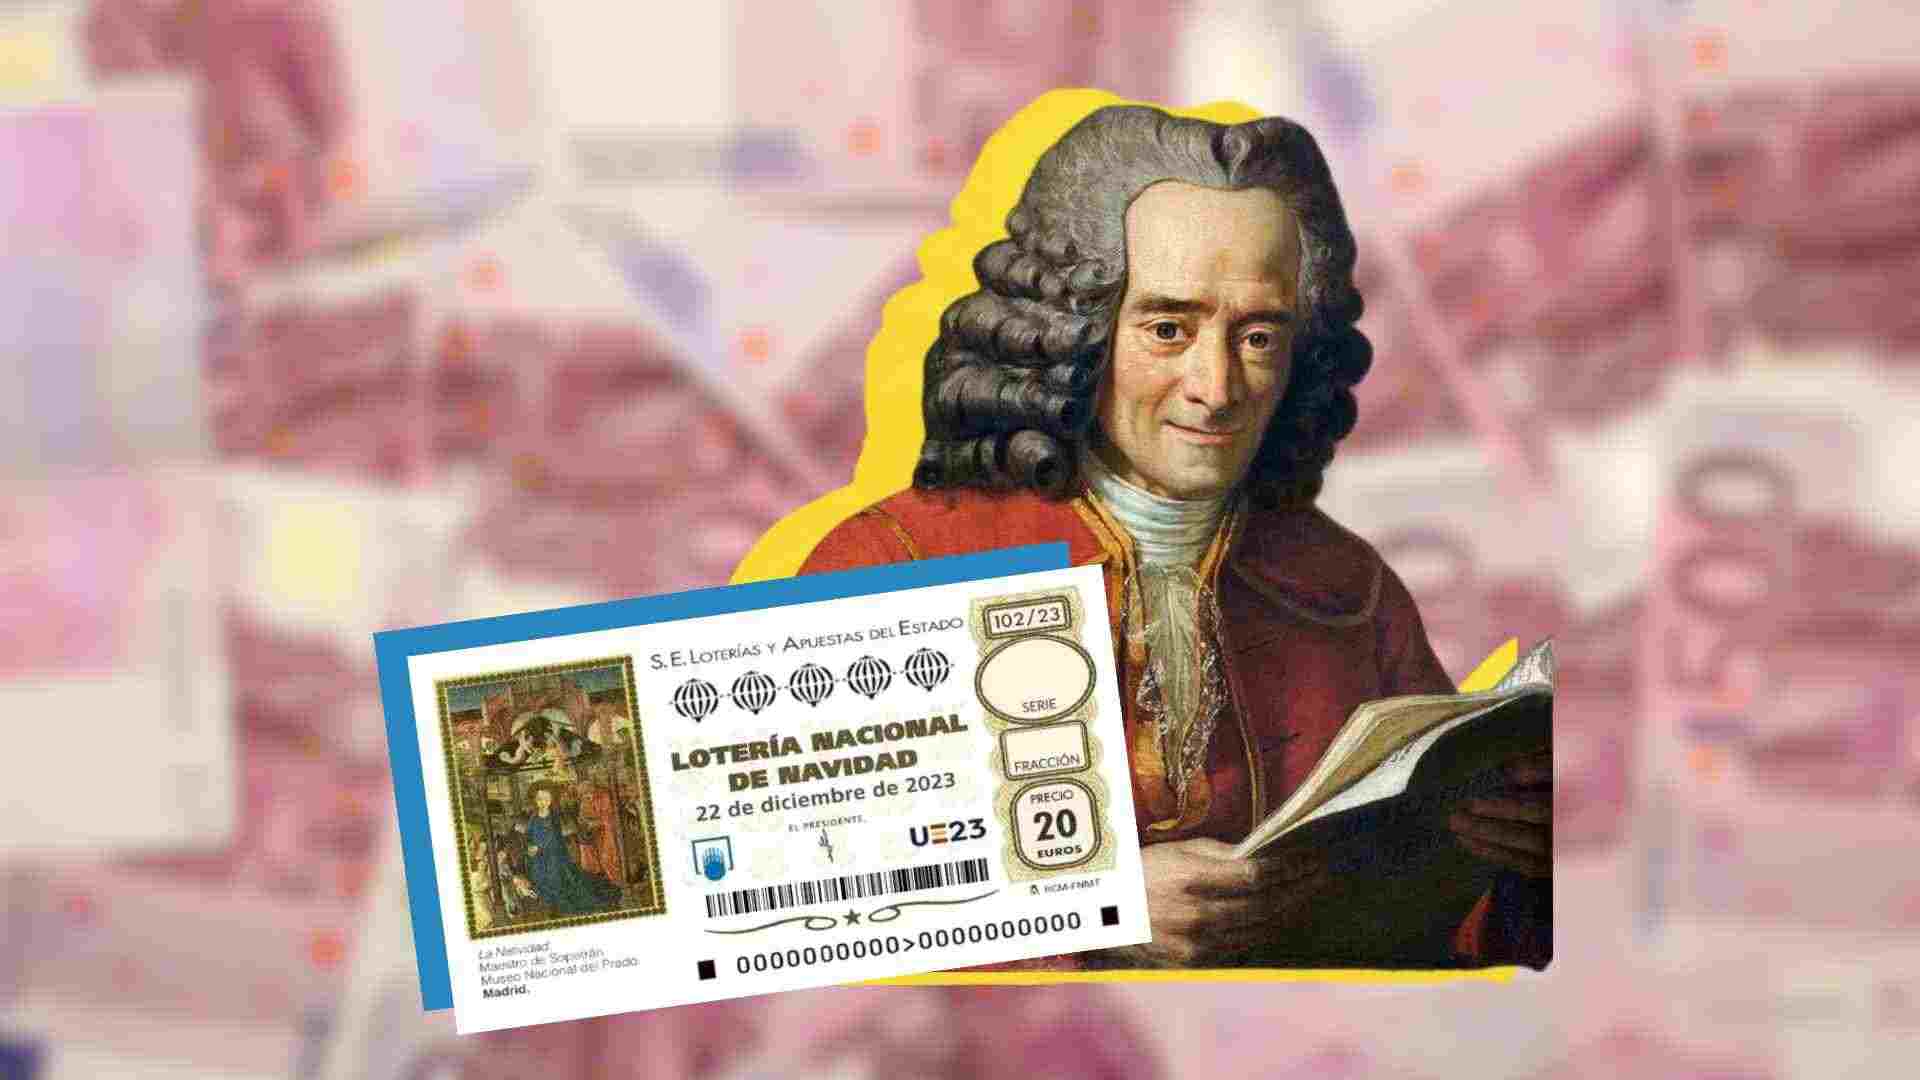 La fórmula infalible de Voltaire para ganar la Lotería de Navidad 2023